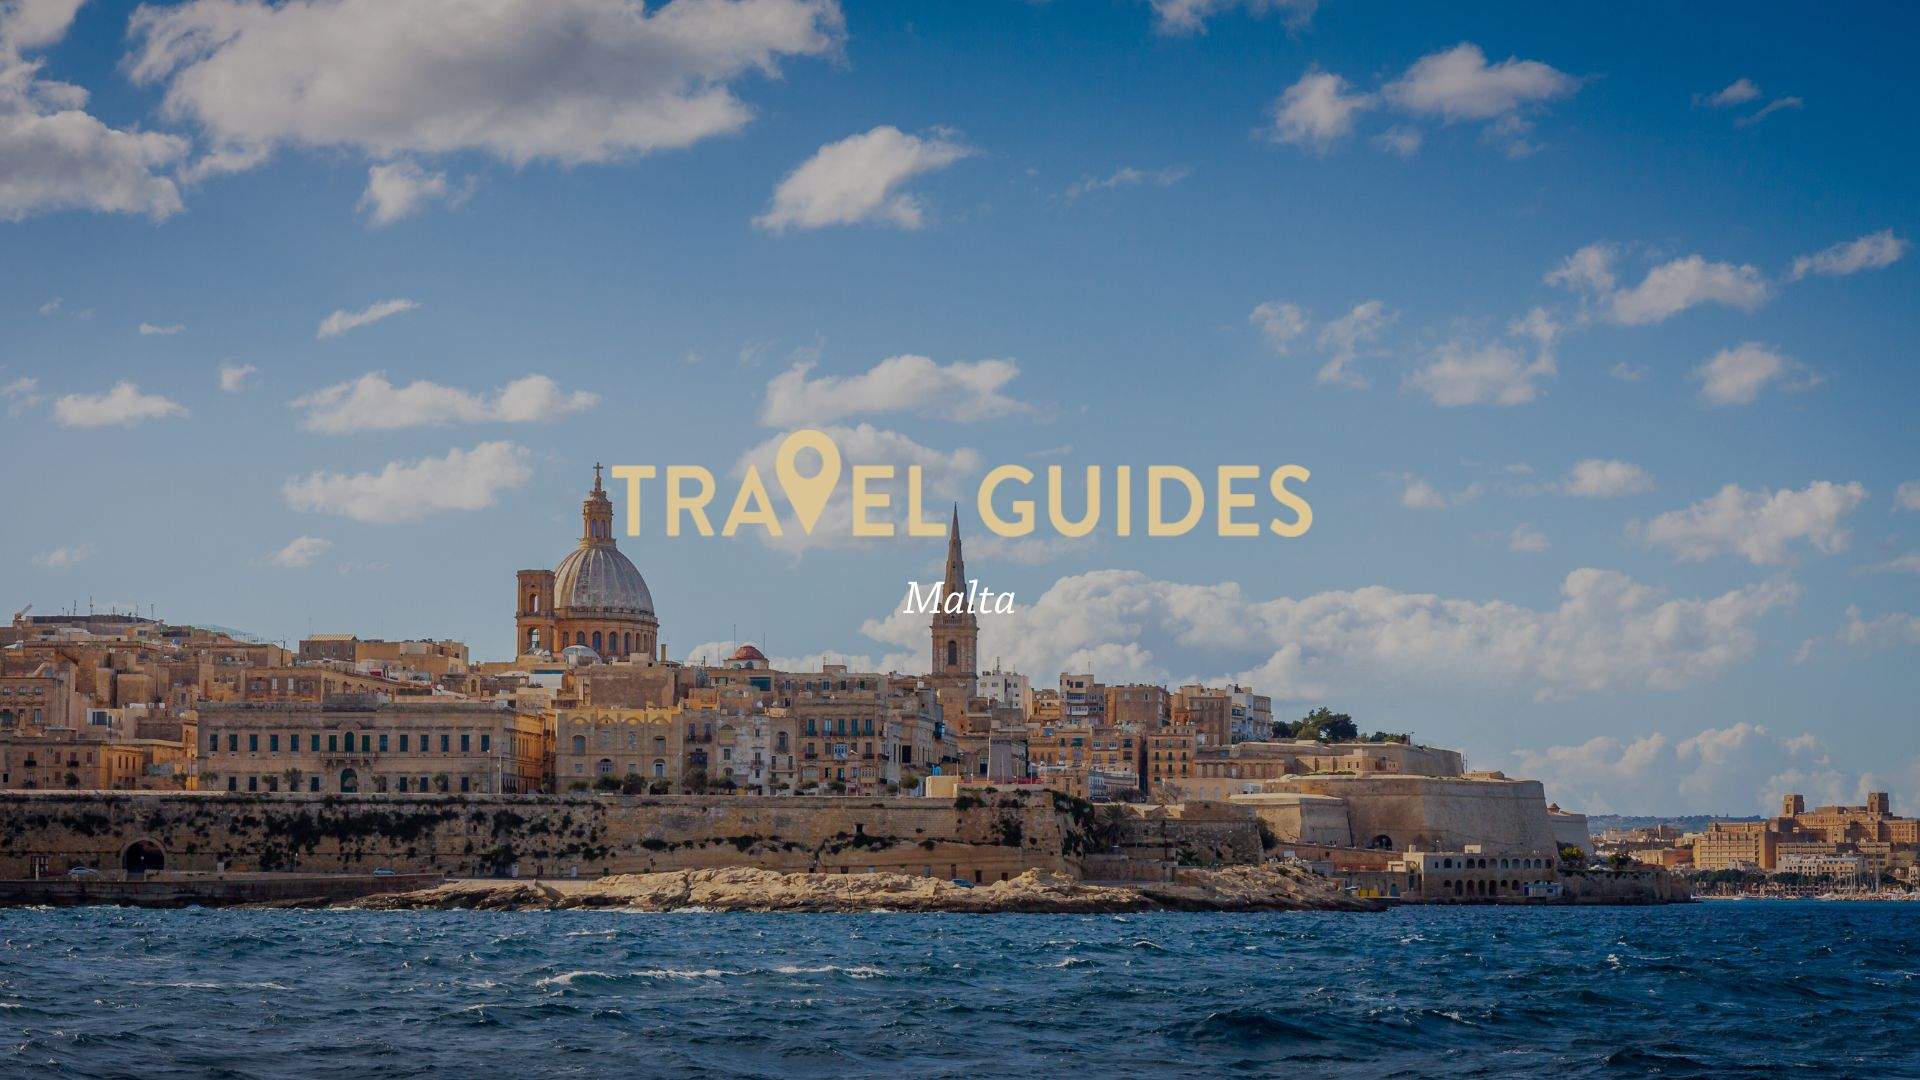 Travel Guide: Malta